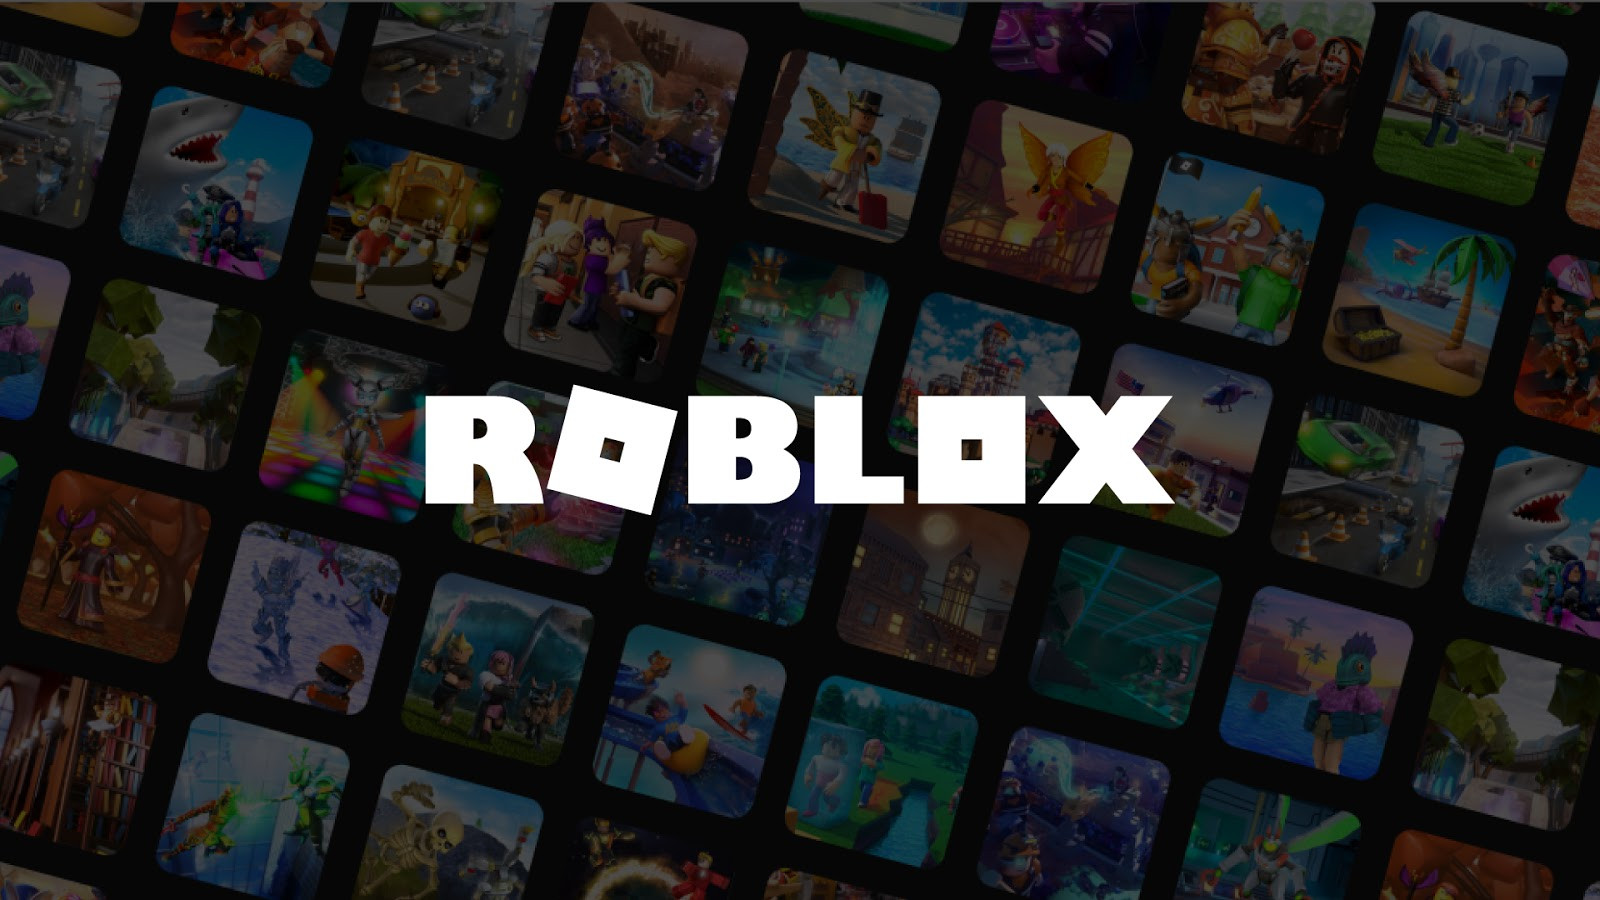 Jugar Roblox Sin Descargar - como jugar roblox en pc sin descargar nada